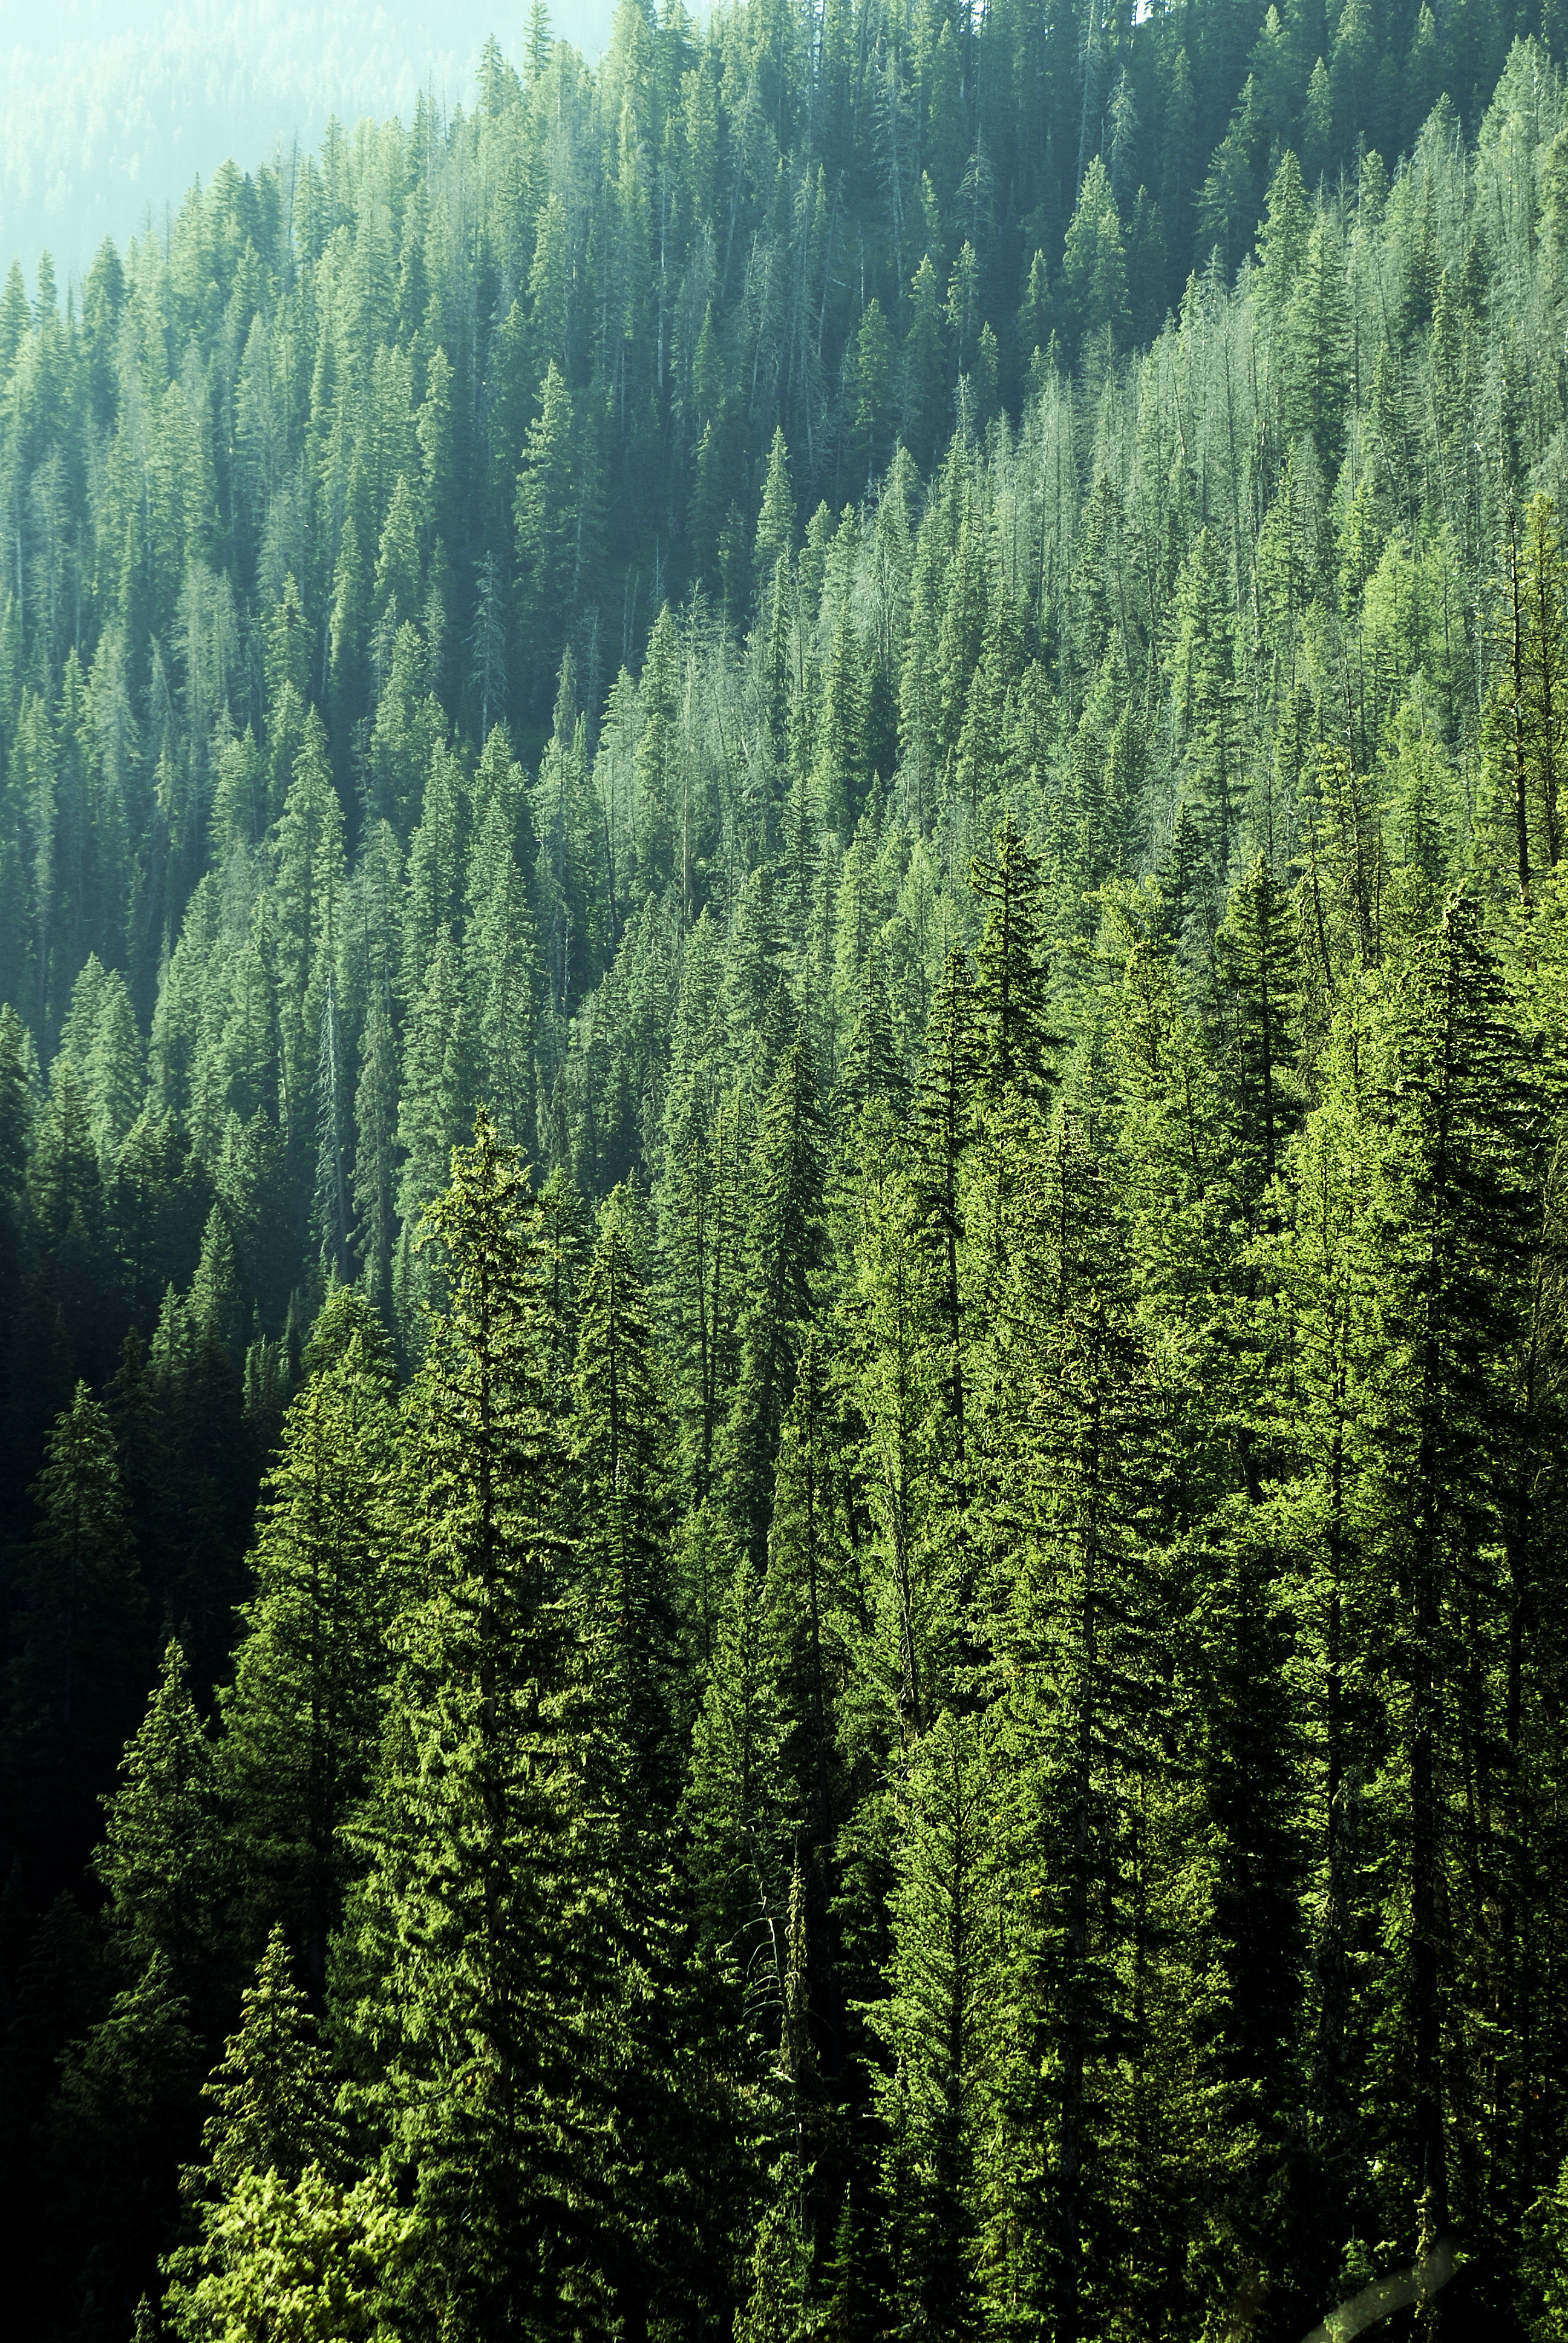 GIS simplifies forest land diversion decisions